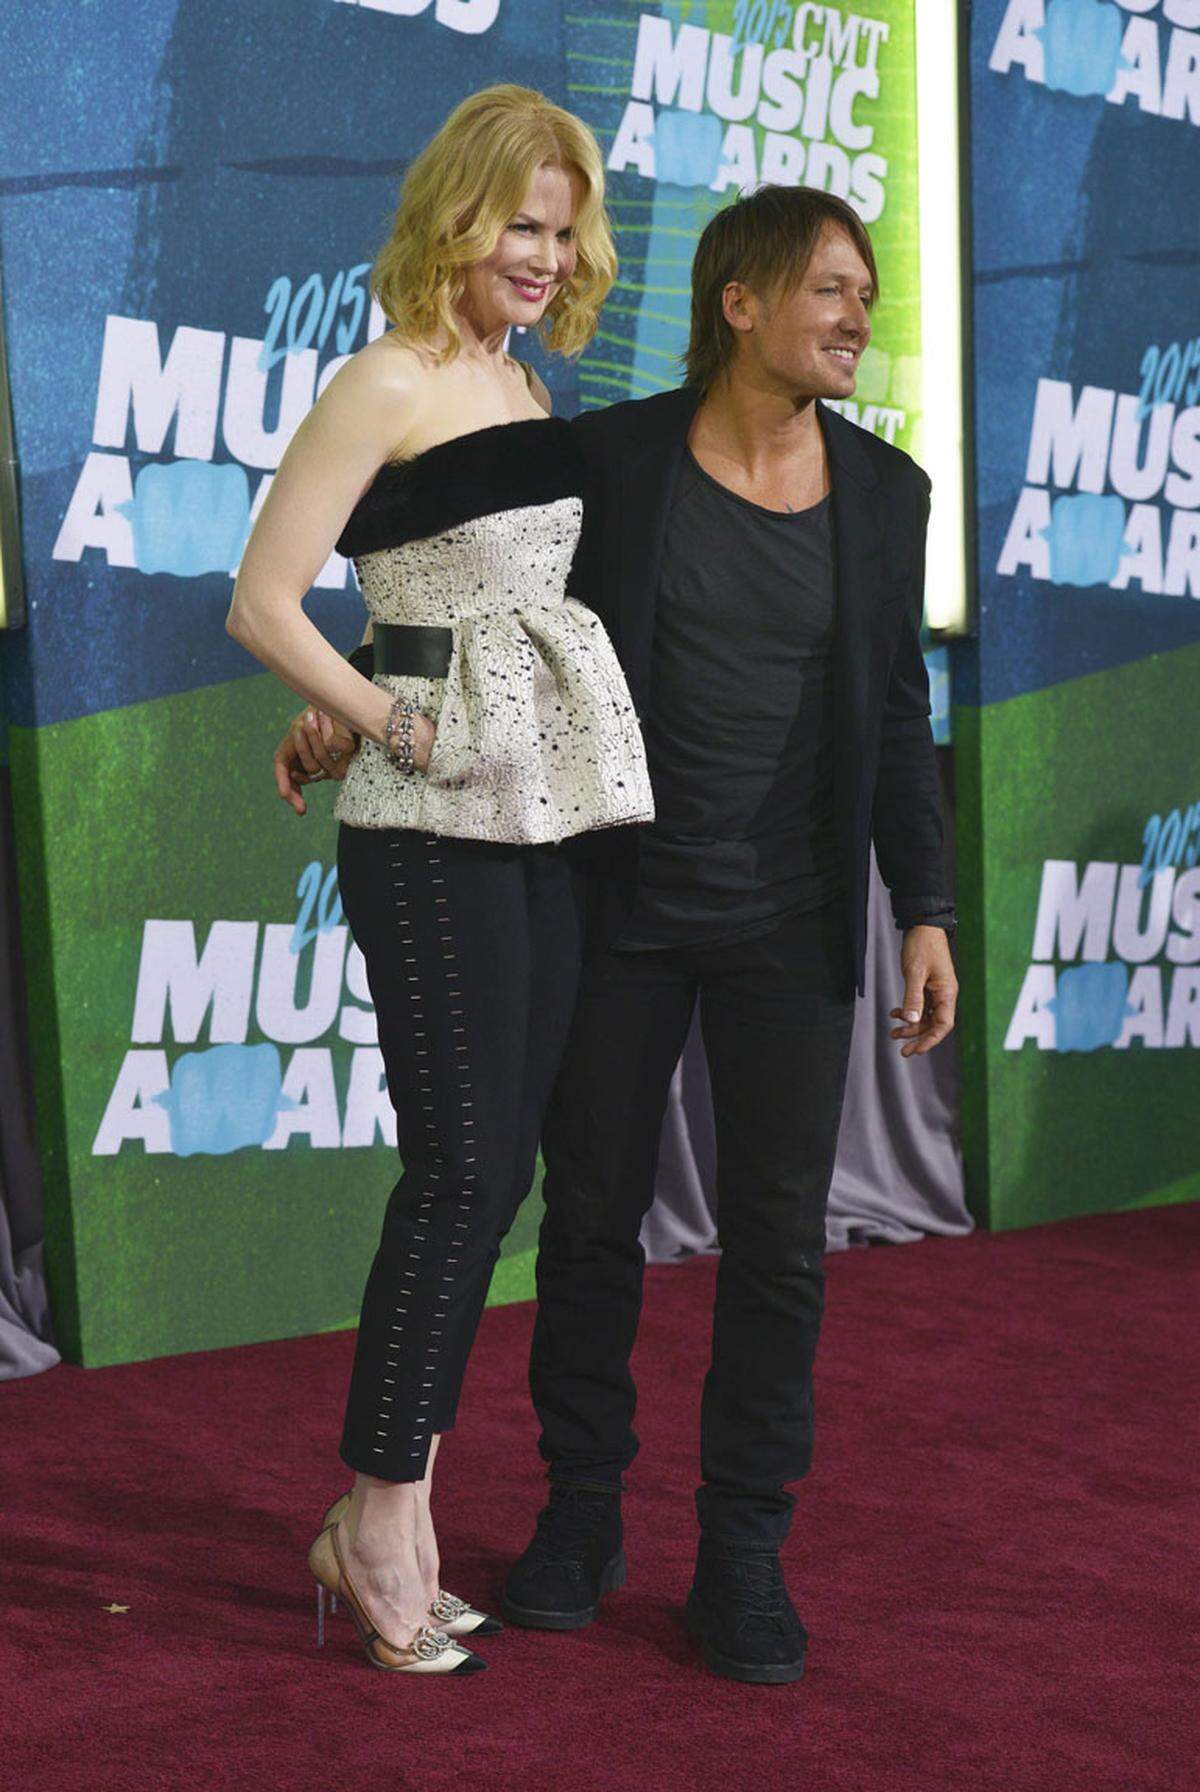 Nicole Kidman ist nicht weit, wenn einer der wichtigsten Preise der Country-Musik-Szene vergeben wird. Immerhin unterstützt sie Ehemann und Musiker Keith Urban in einem Ensemble von Balenciaga auf dem roten Teppich.